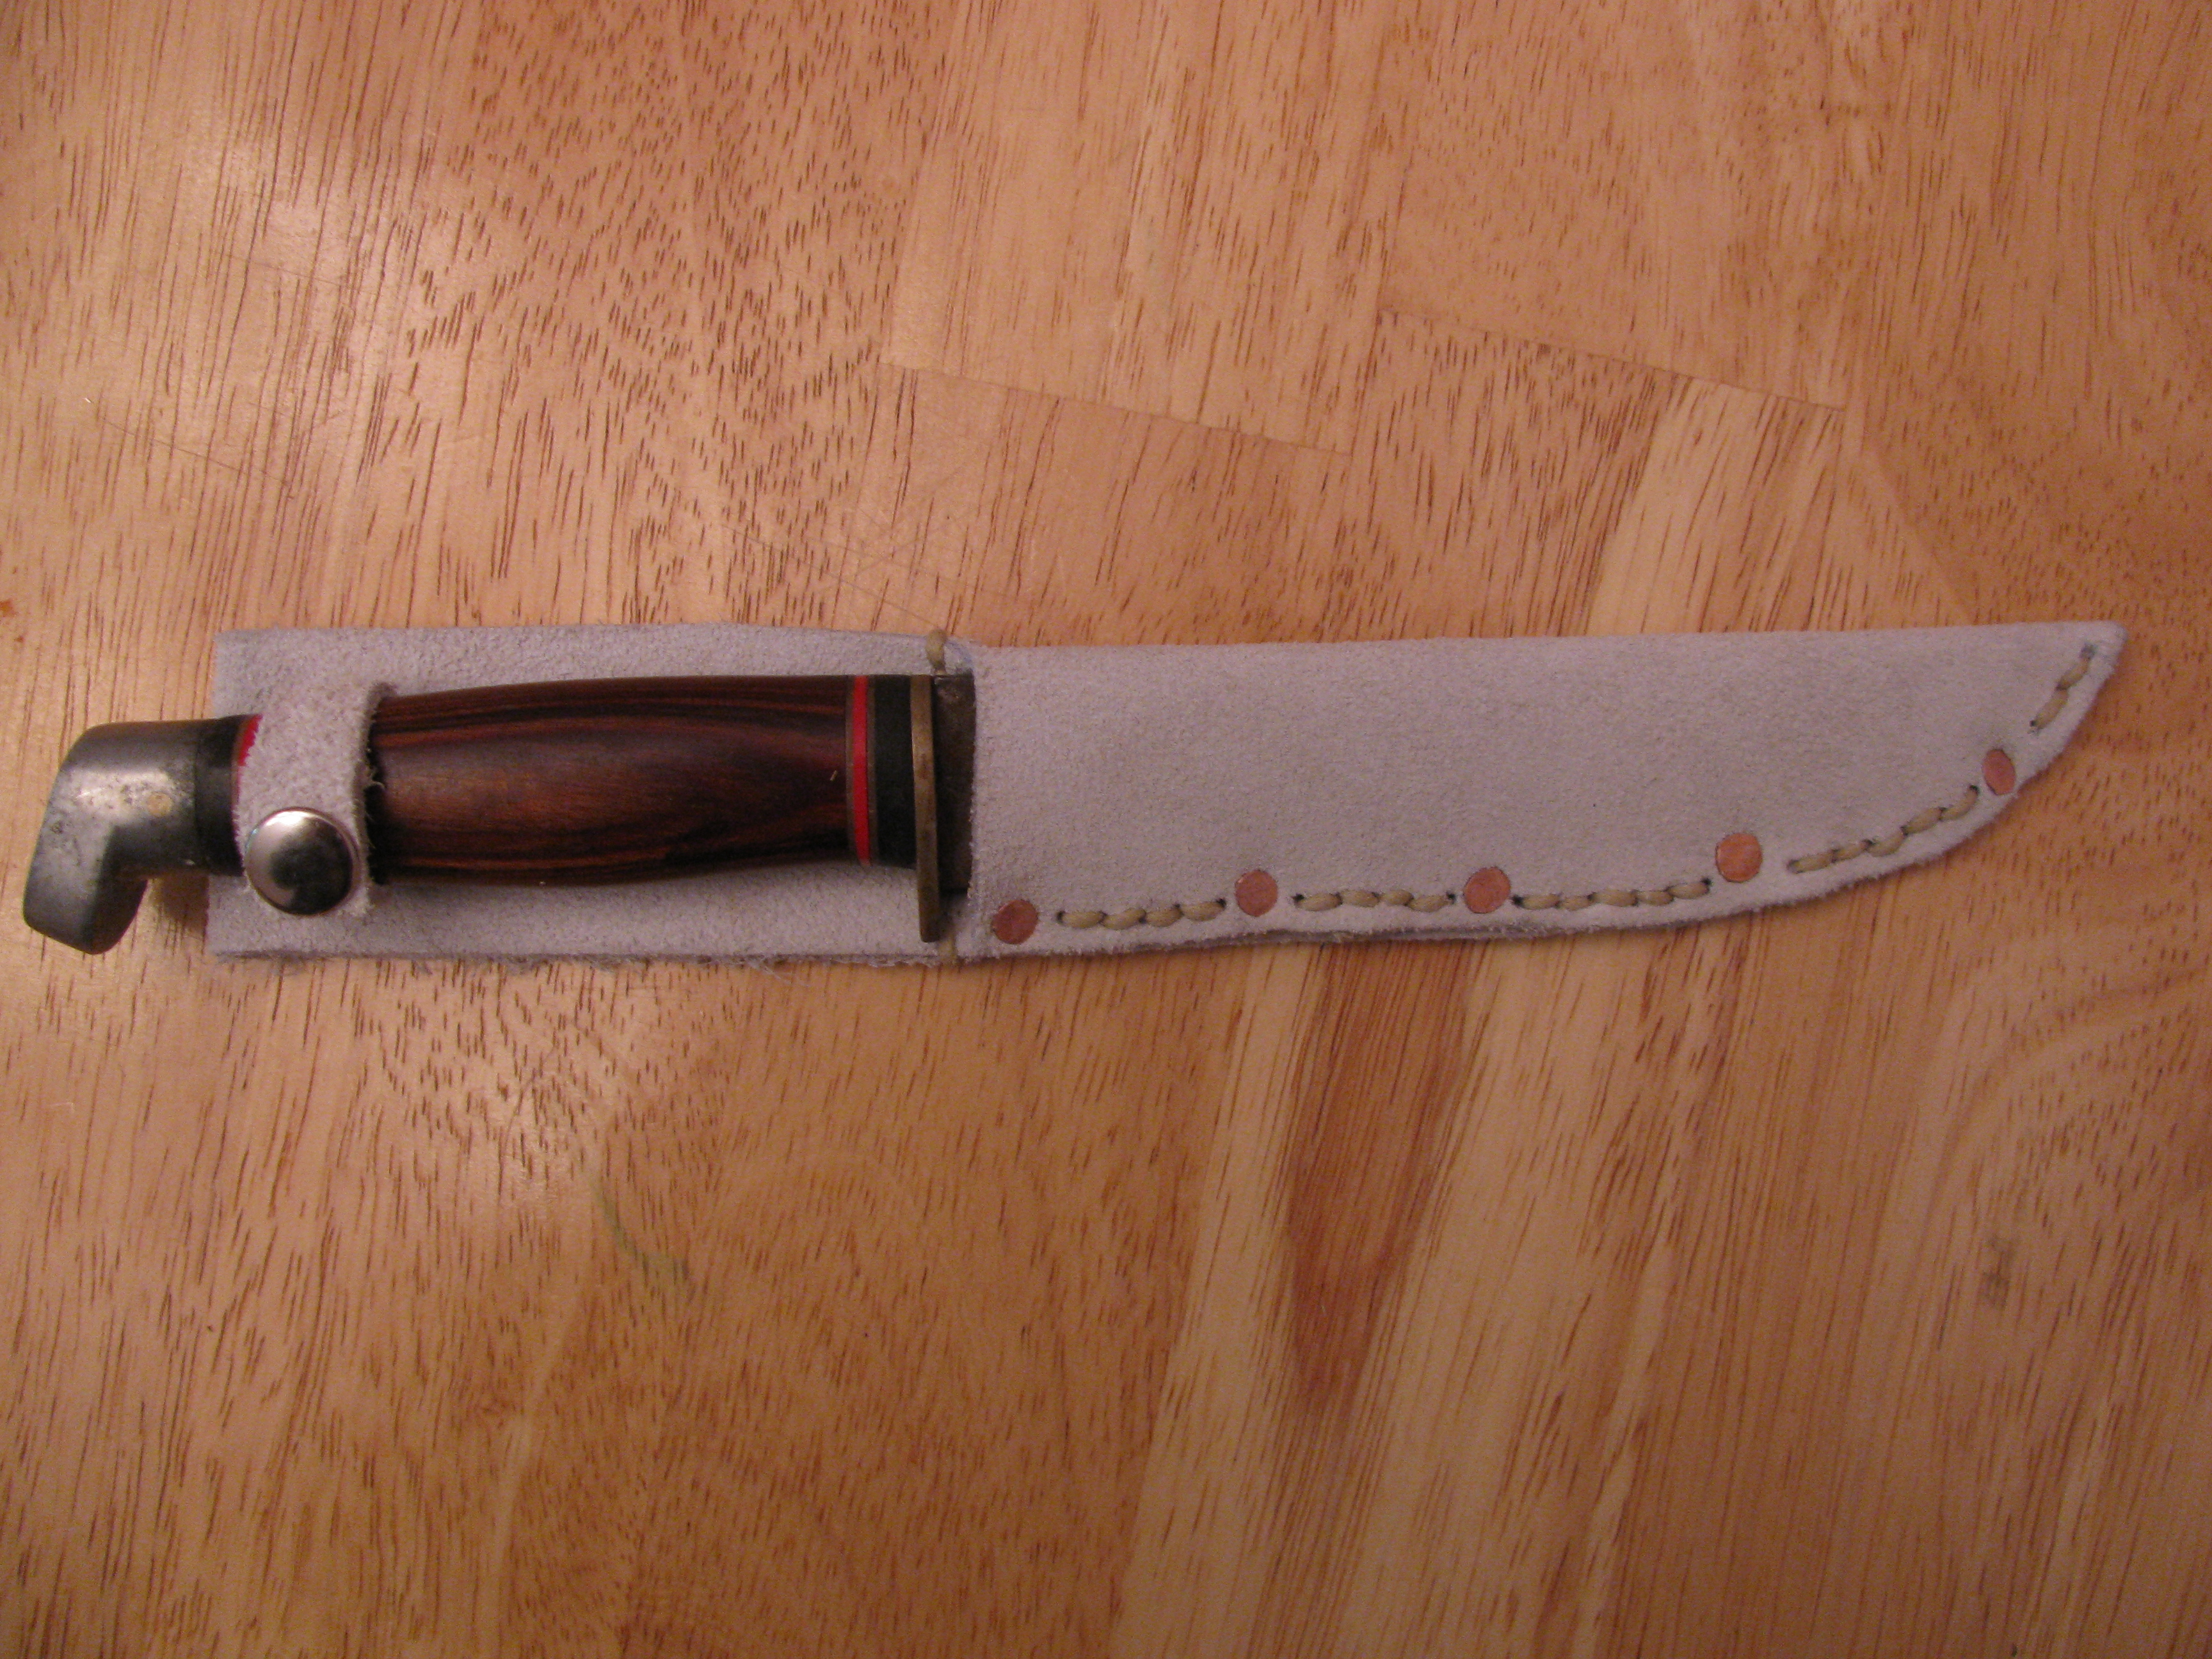 https://upload.wikimedia.org/wikipedia/commons/8/8c/Making_a_knife_sheath_06.jpg